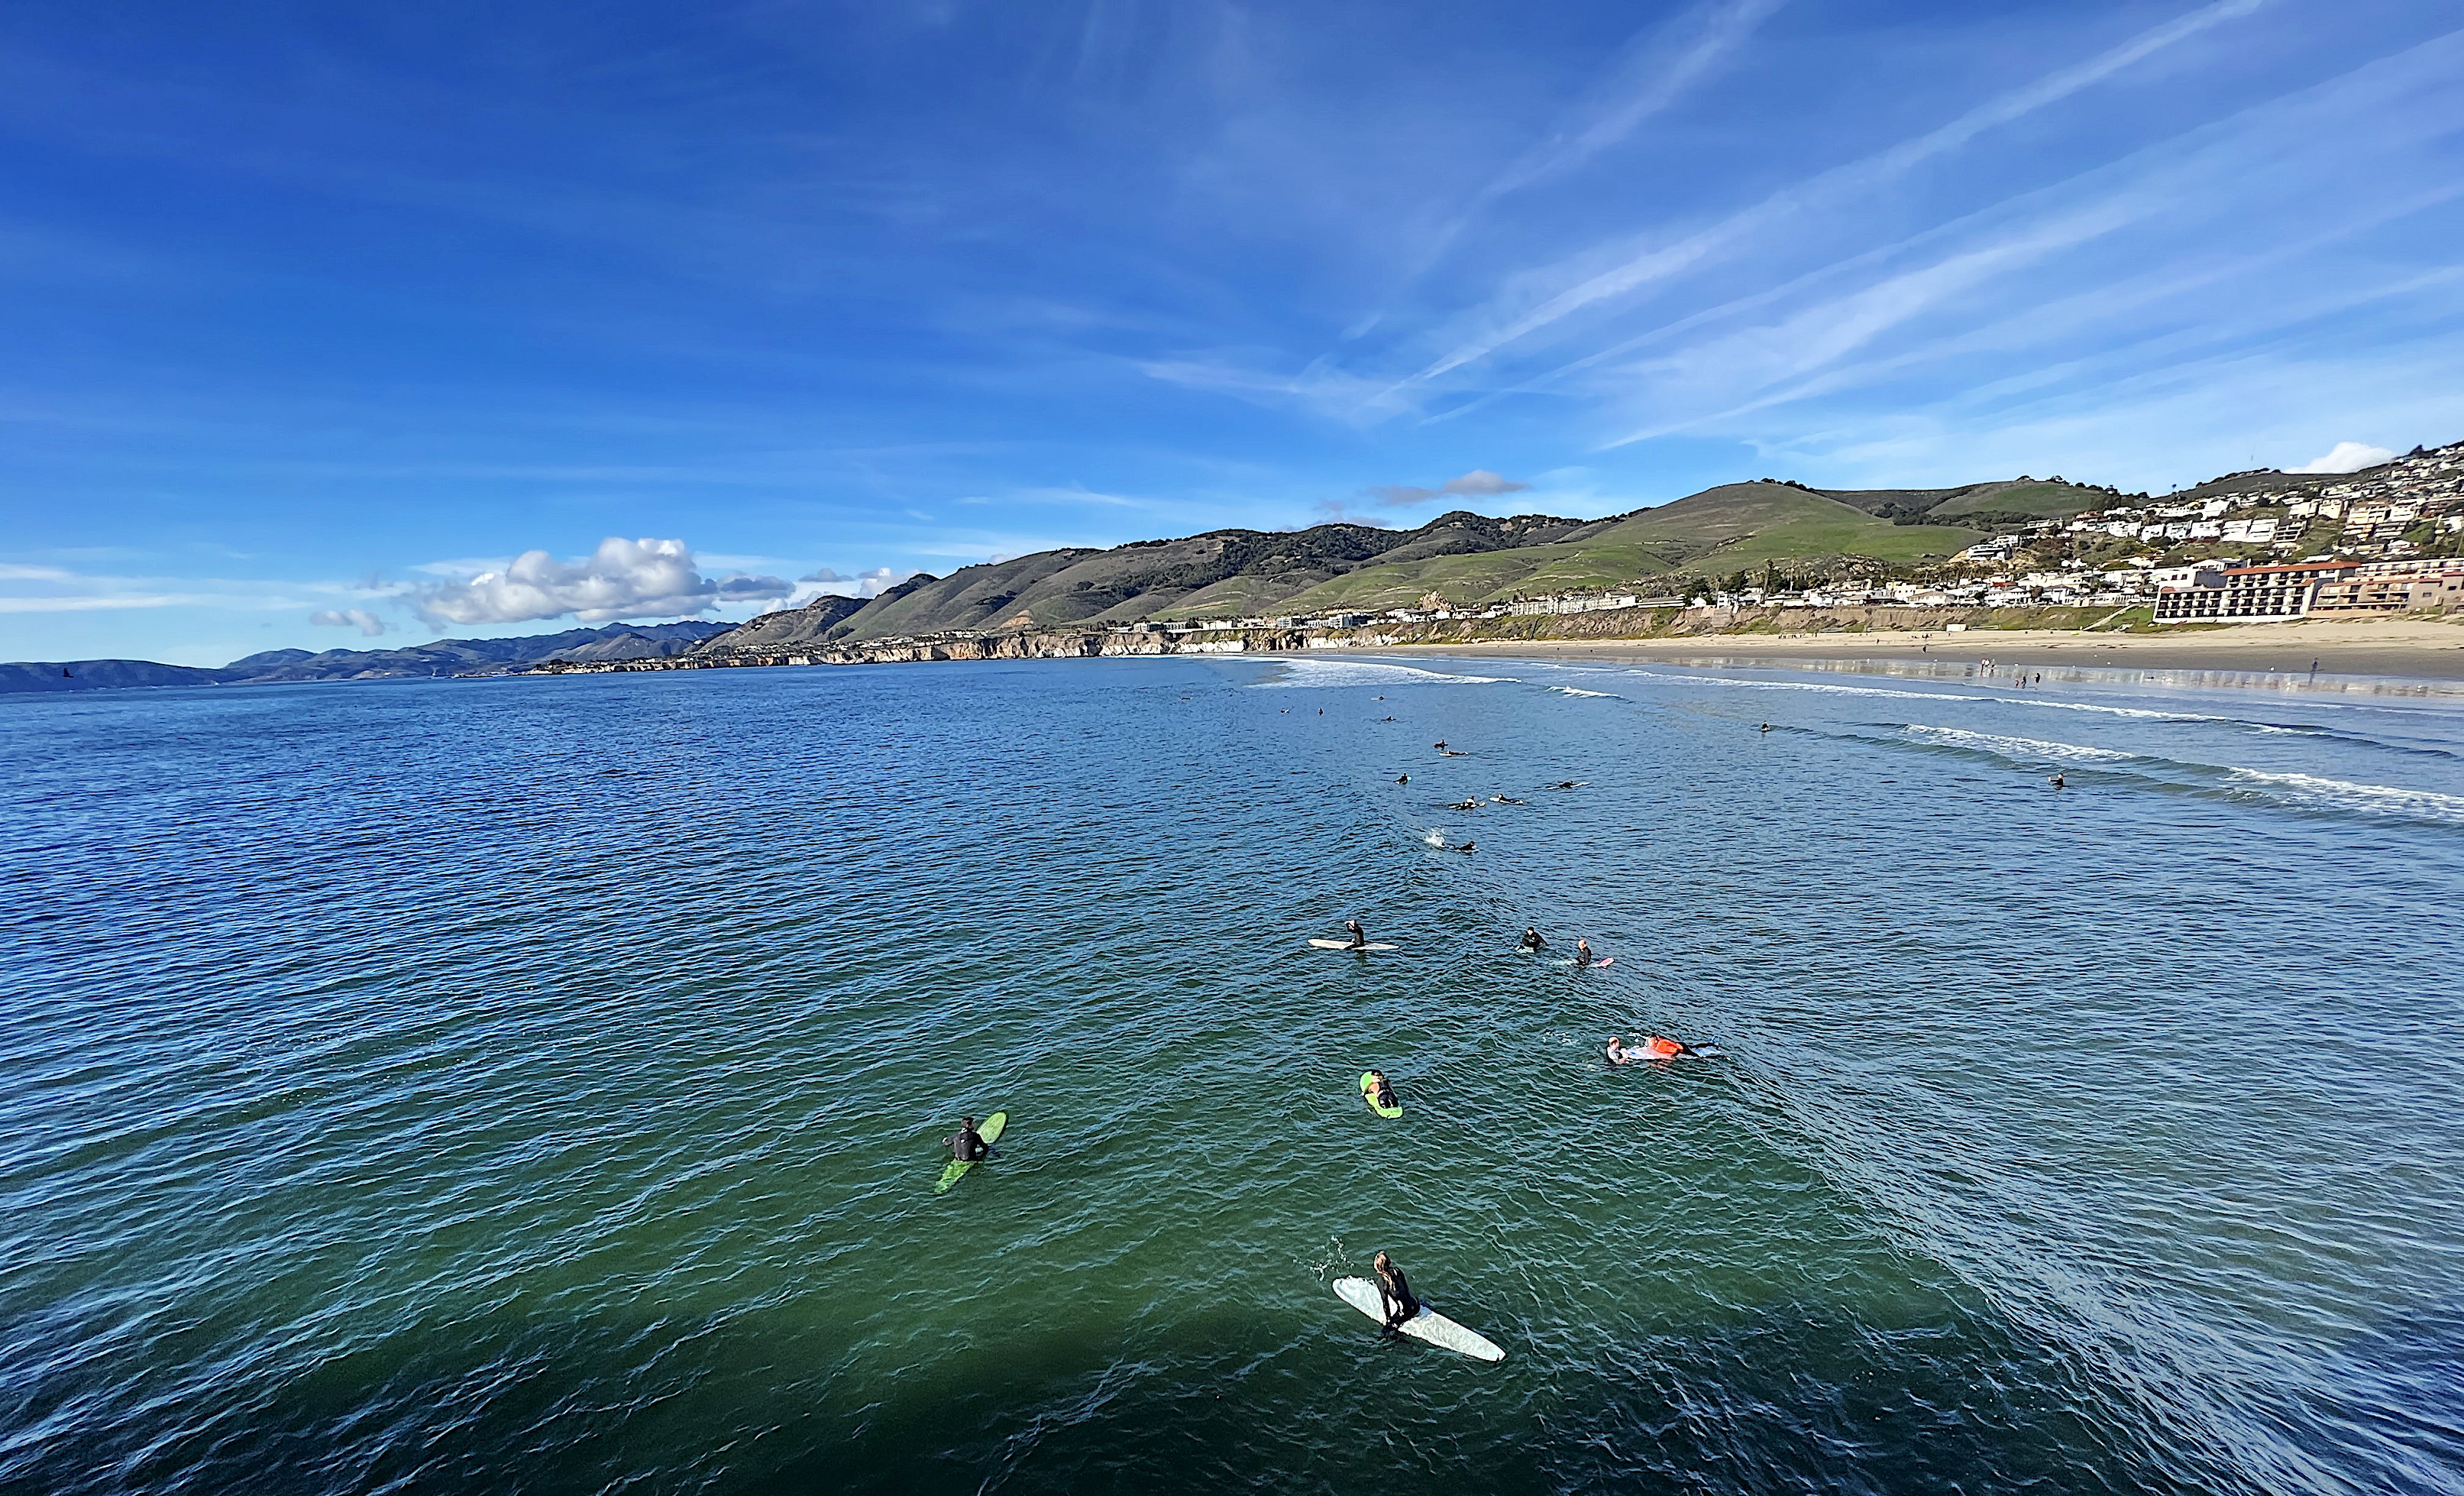 Ein Dutzend Surfer wartet in der Dünung auf den Brettern liegend oder sitzend auf die richtige Welle. Dahinter der Strand und die Klippen der Bucht.